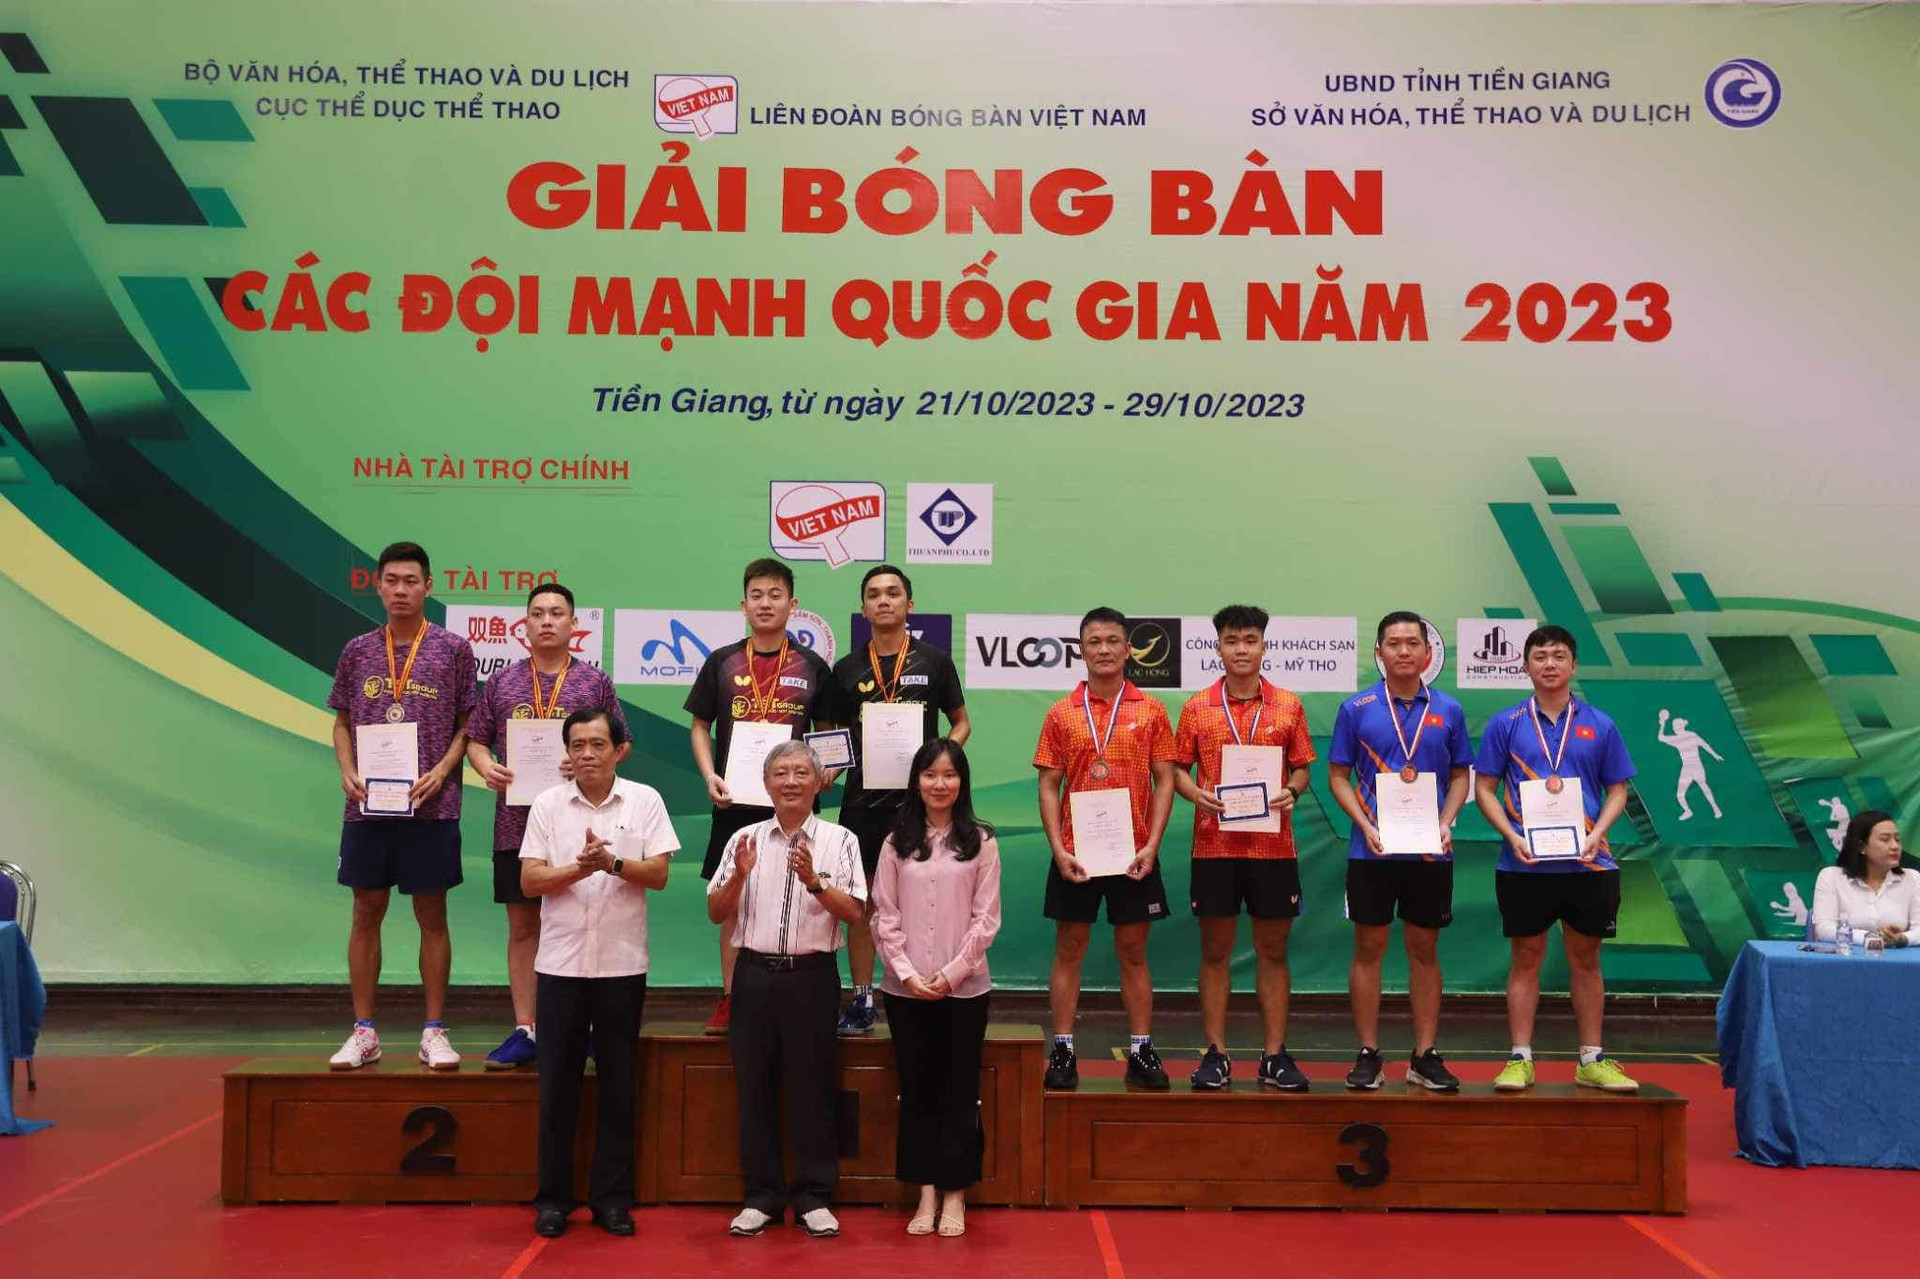 Anh Hoàng, Mai Ngọc, Đình Đức giúp CLB bóng bàn Hà Nội T&T giành 2 huy chương vàng nội dung đôi nam và đôi nam nữ tại Giải bóng bàn các đội mạnh quốc gia 2023.